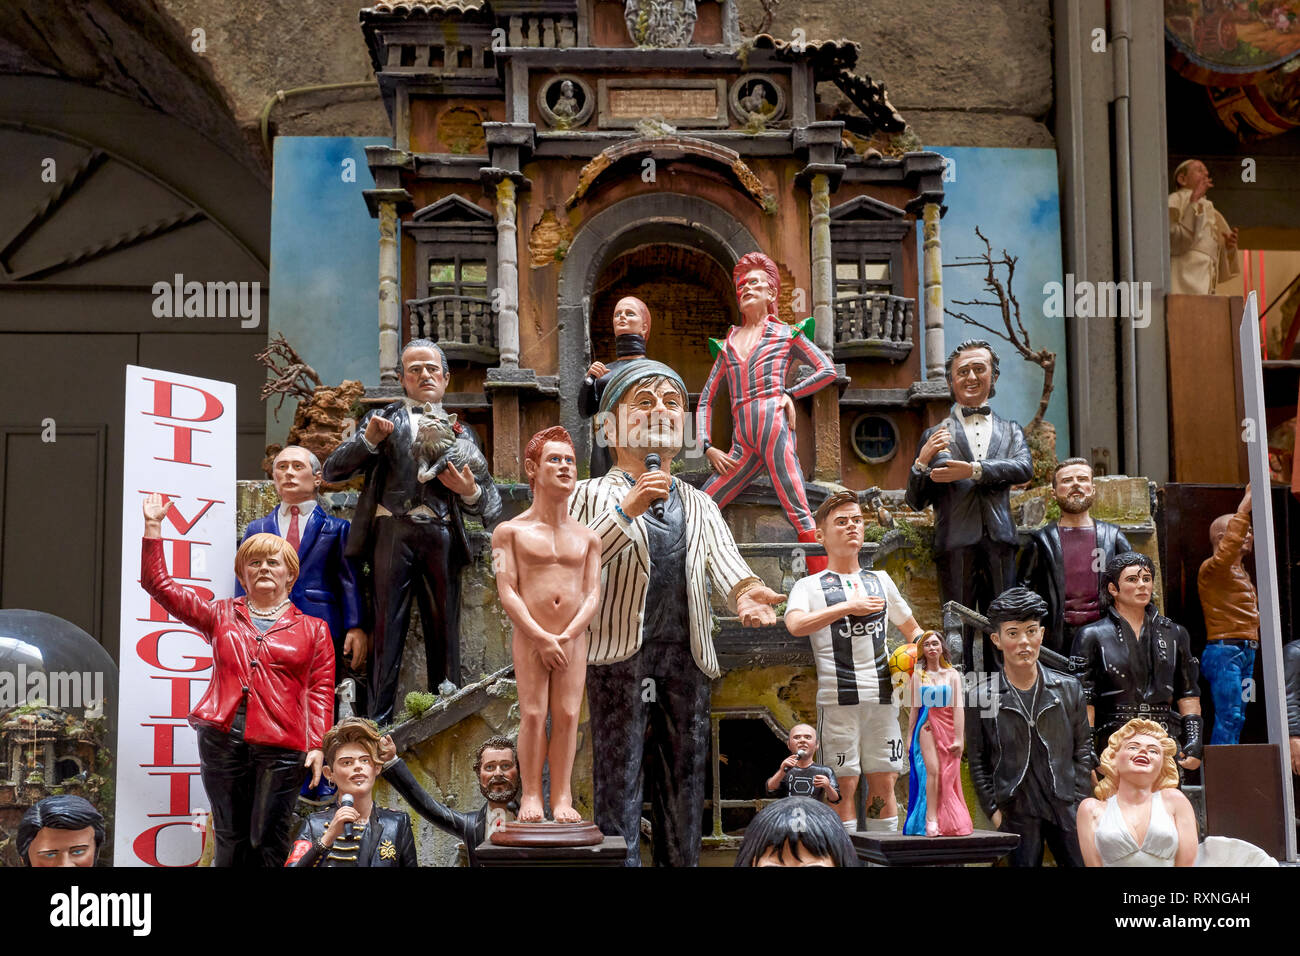 Naples Campanie Italie. Figurines statues de la Crèche de Noël dans les ateliers artisanaux de Via San Gregorio Armeno Banque D'Images